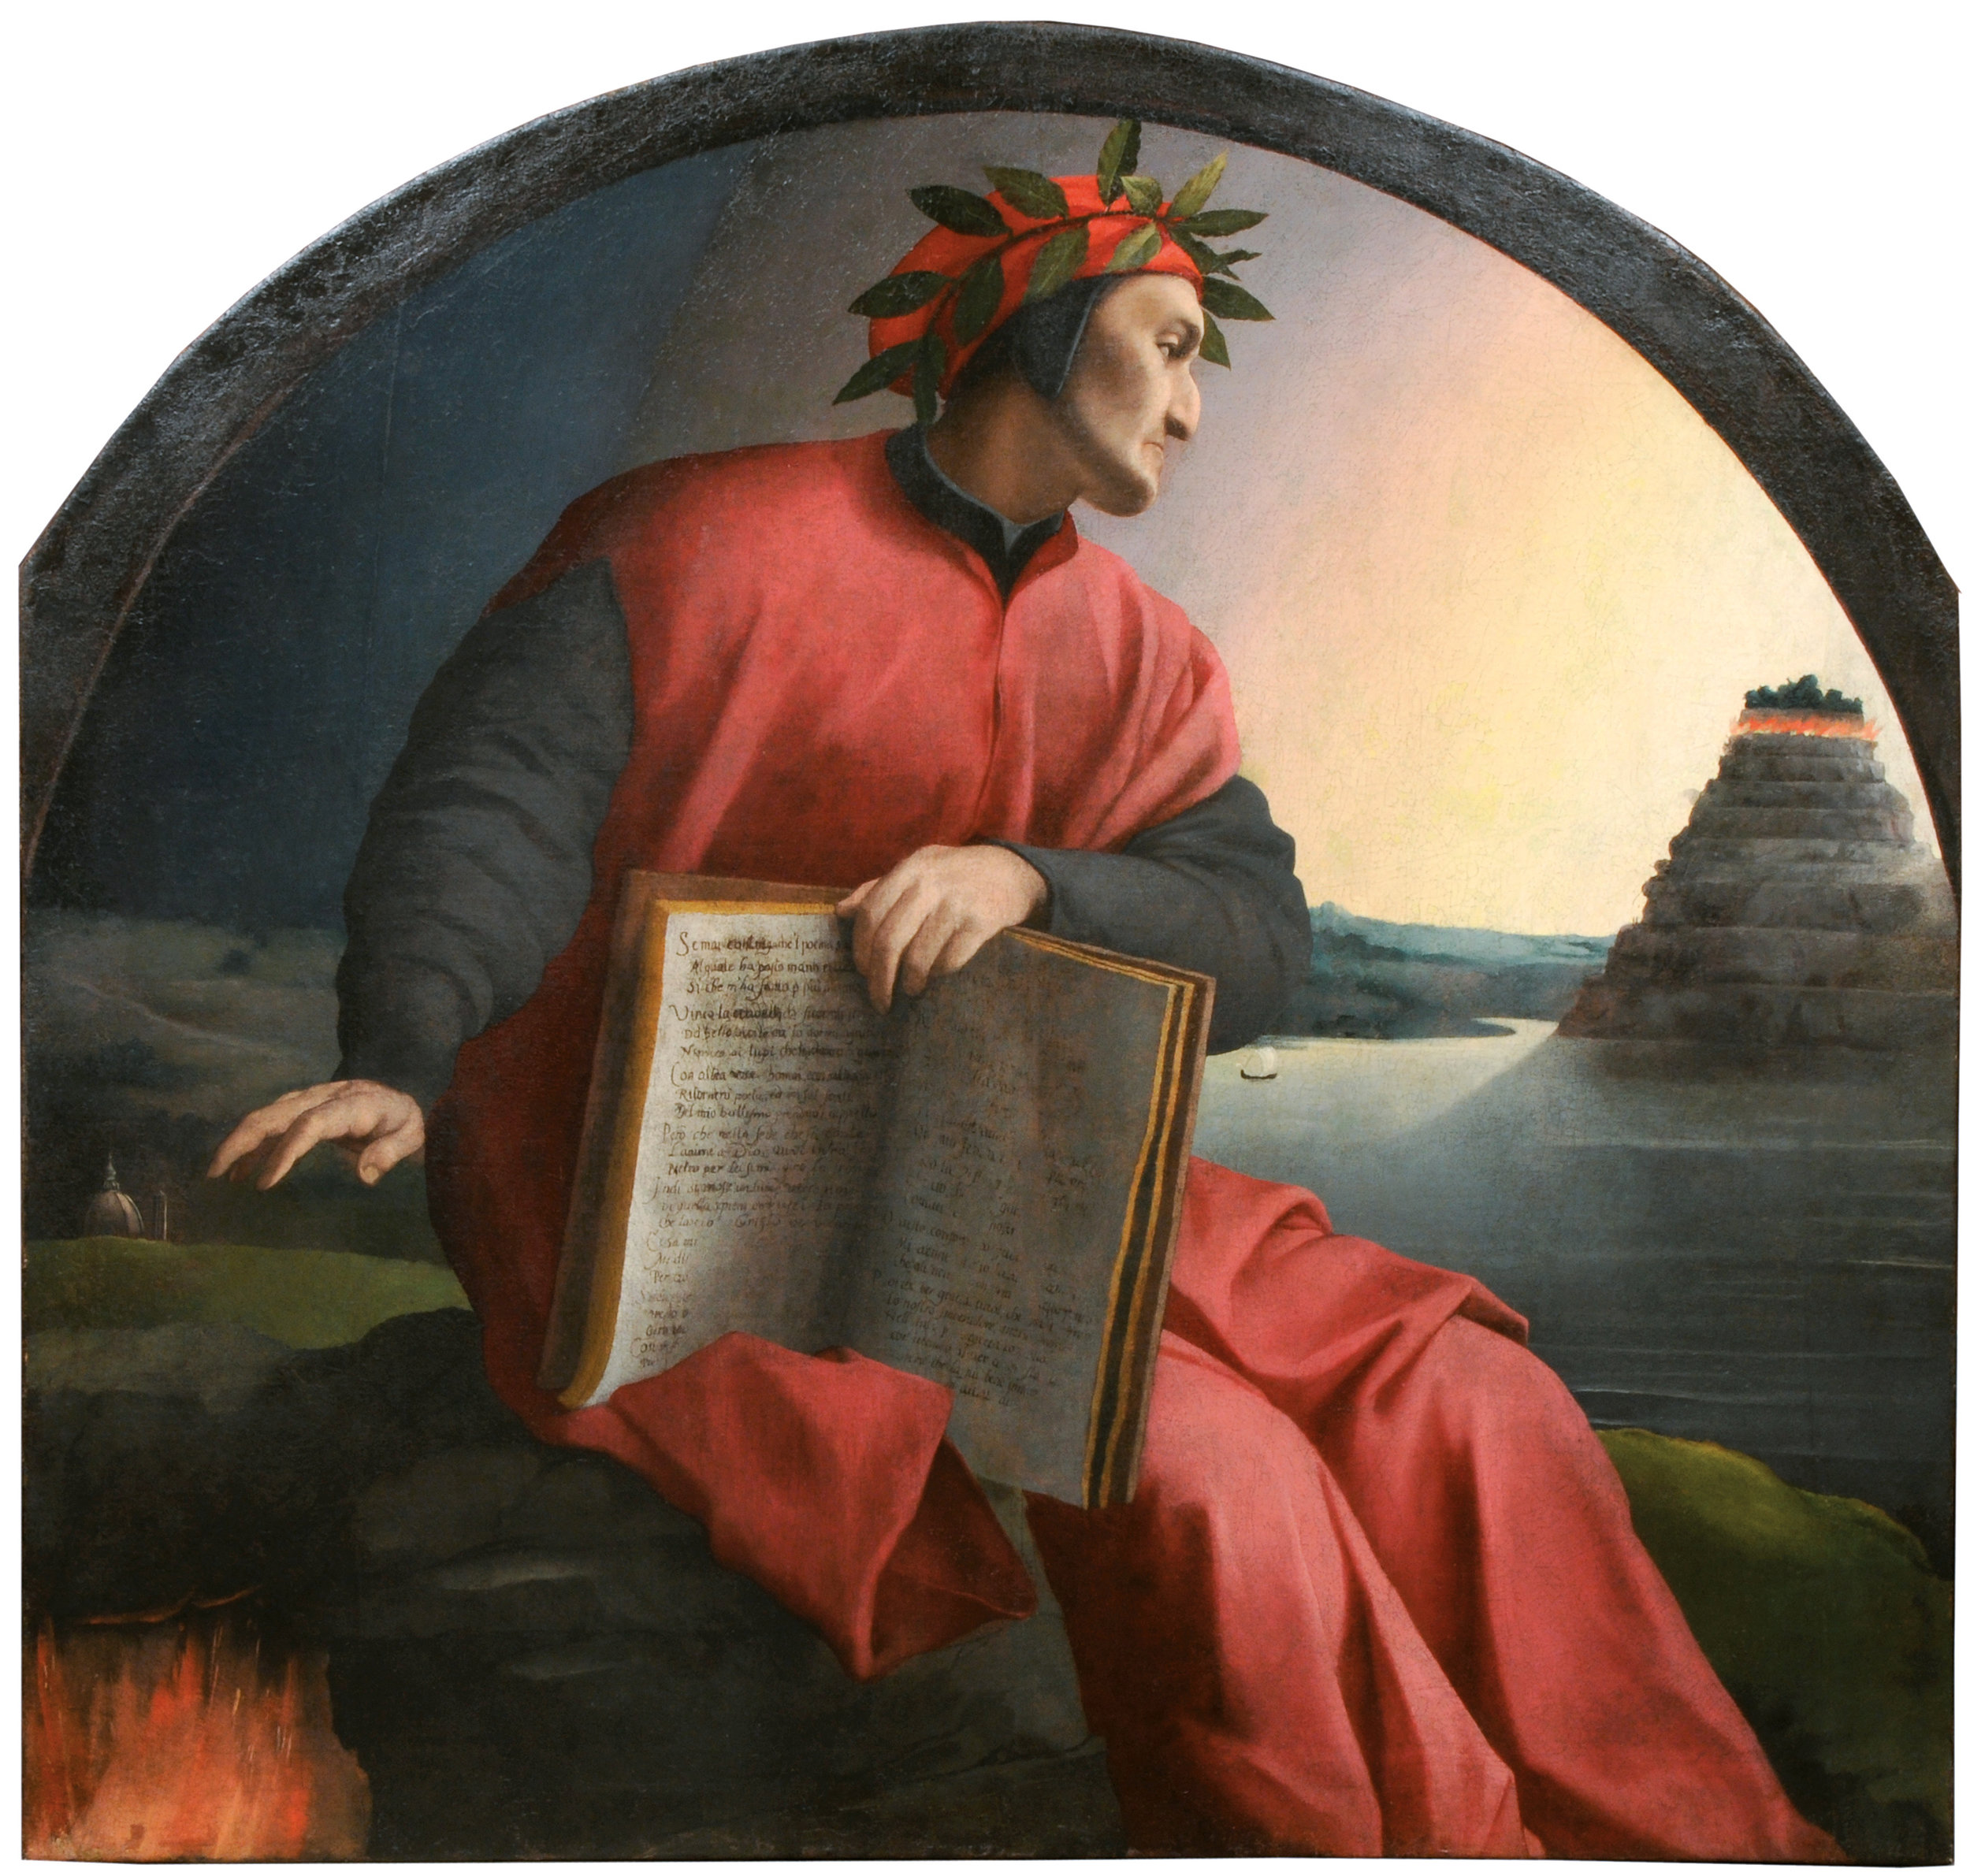 Illustrating Allegory in Dante's Inferno